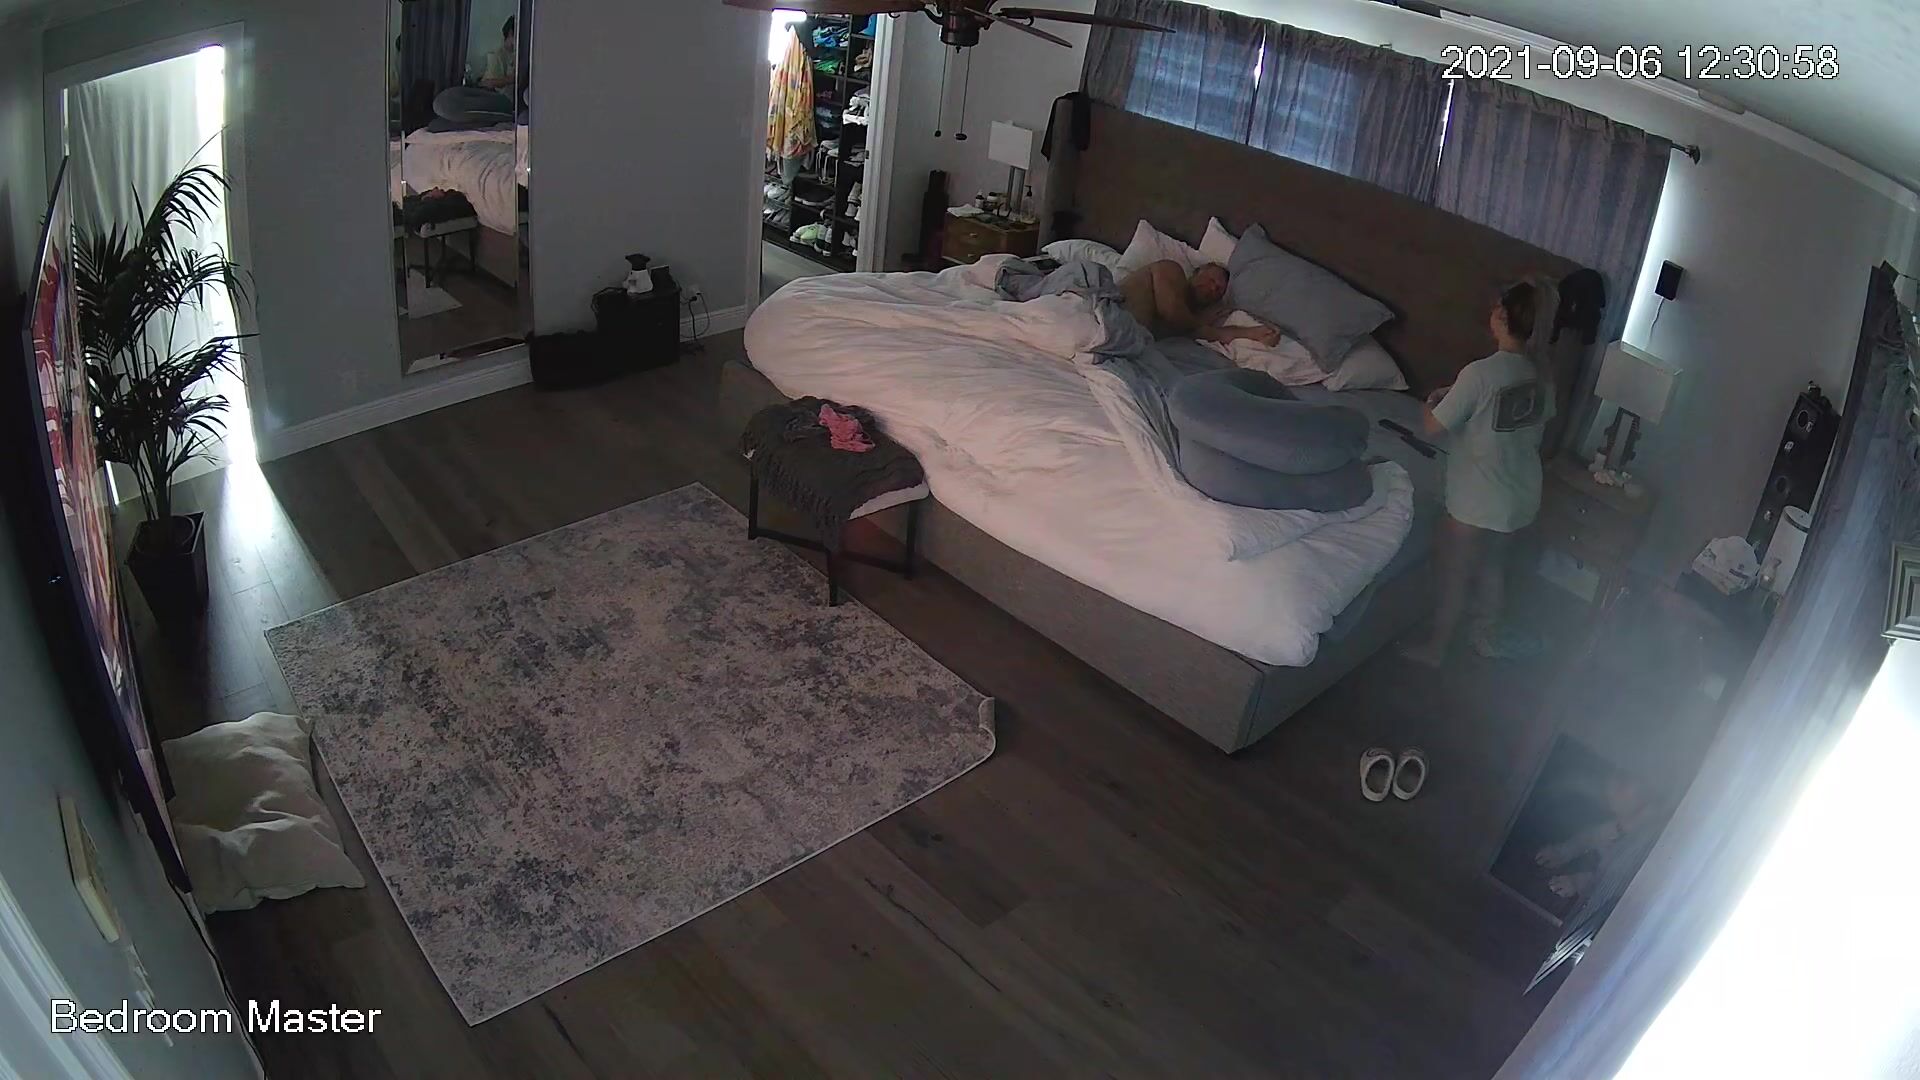 1920px x 1080px - My parents bedroom hidden cam blowjob video